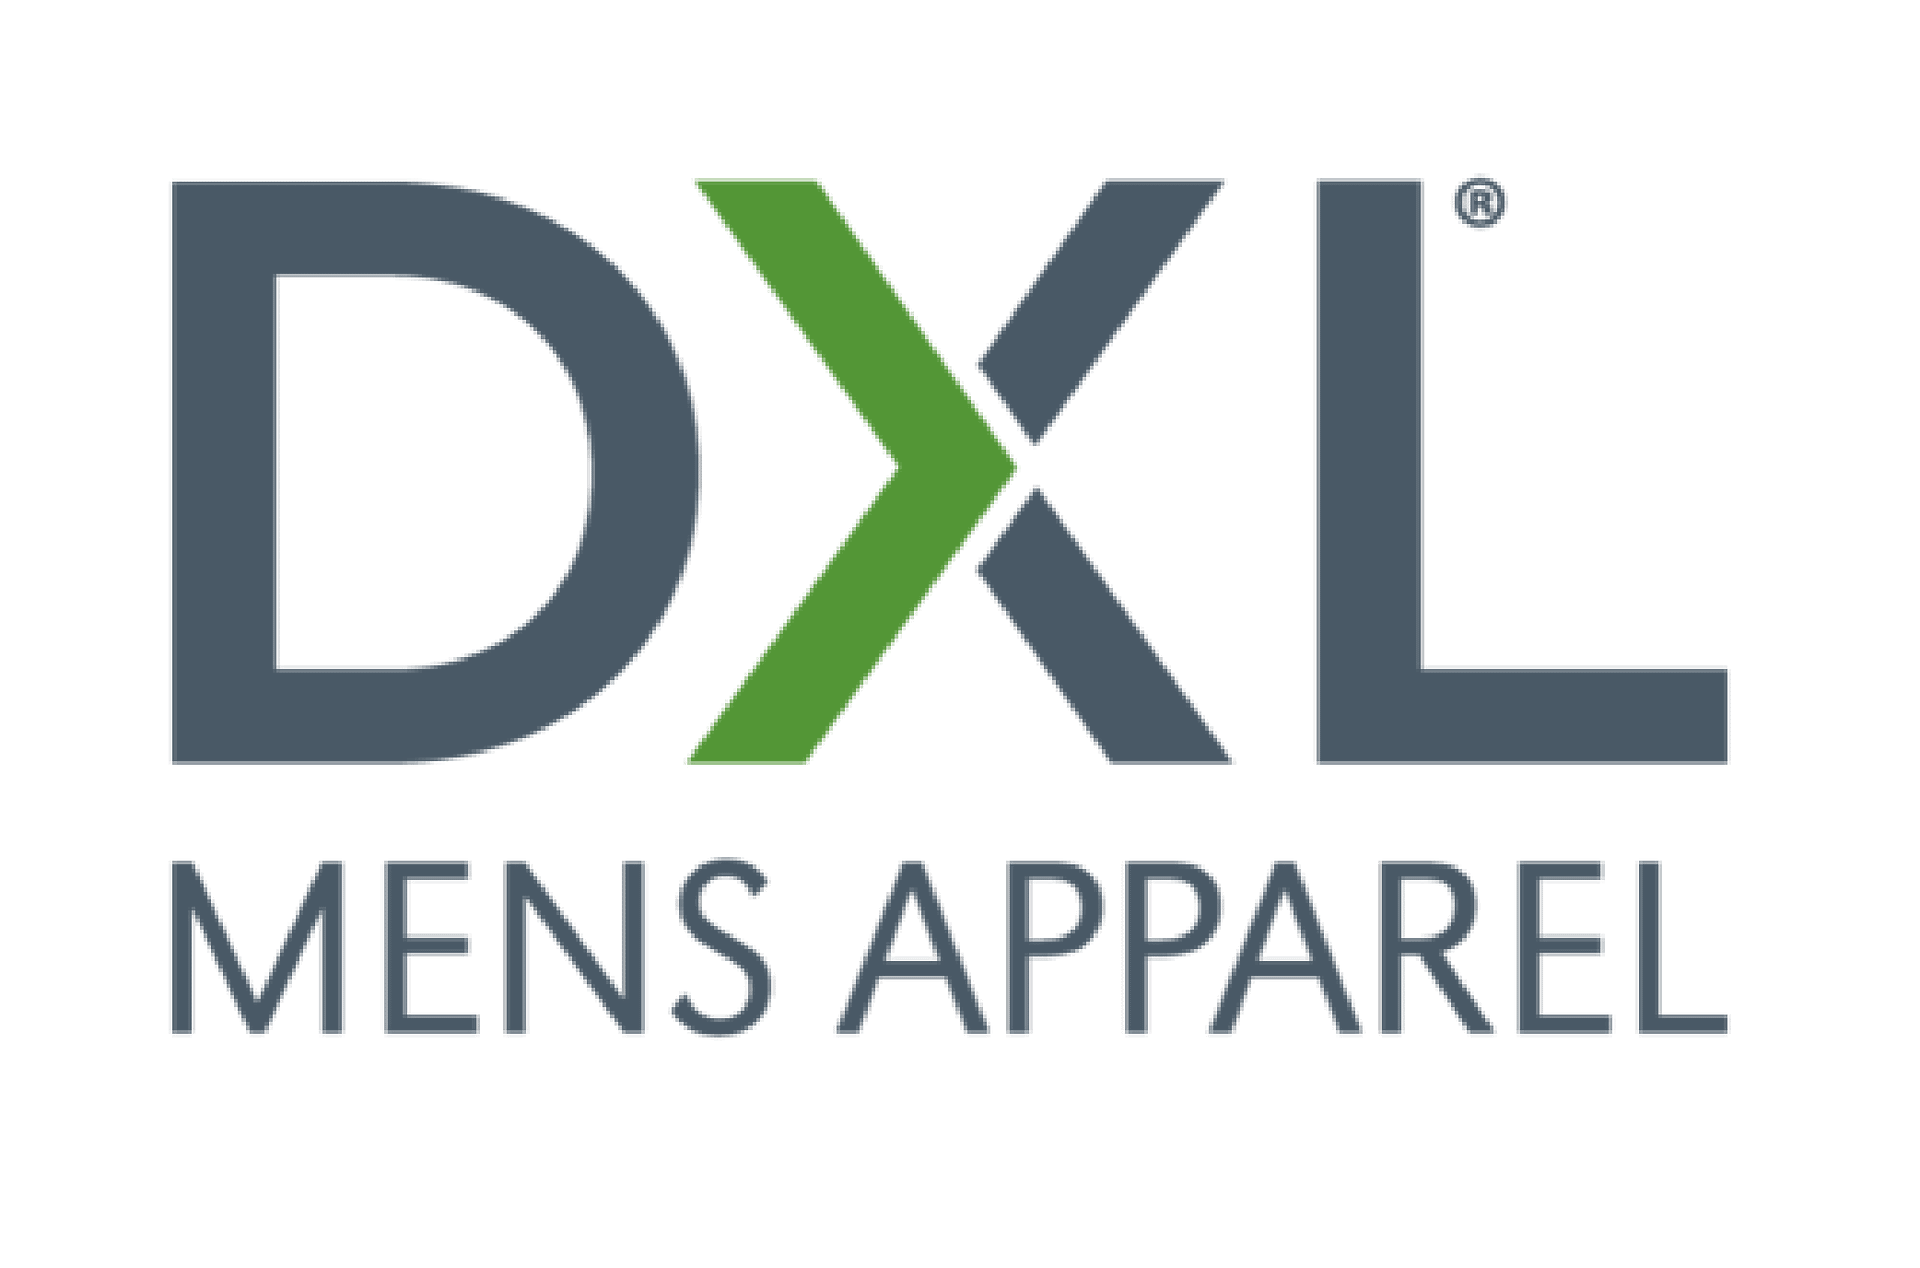 DXL Mens Apparel